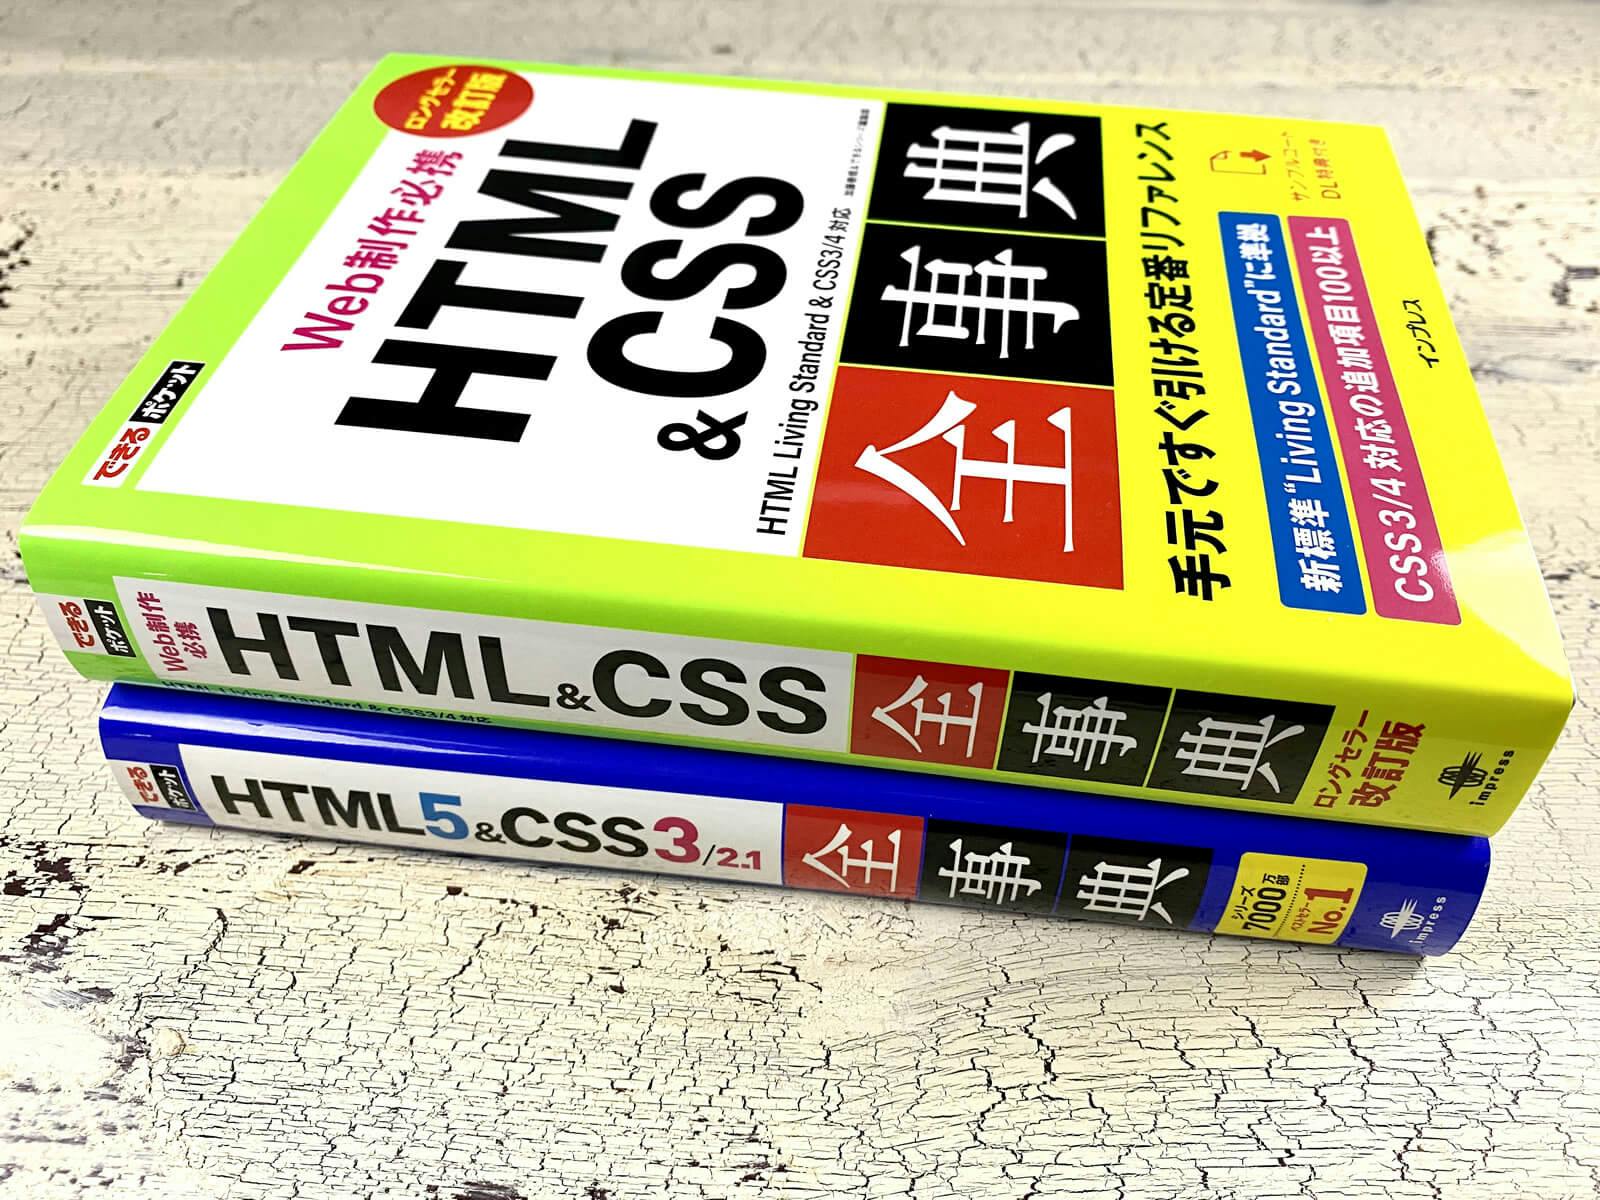 書籍「できるポケット HTML&CSS全事典」の厚さ比較 - 改定版（写真上）と旧版（写真下）